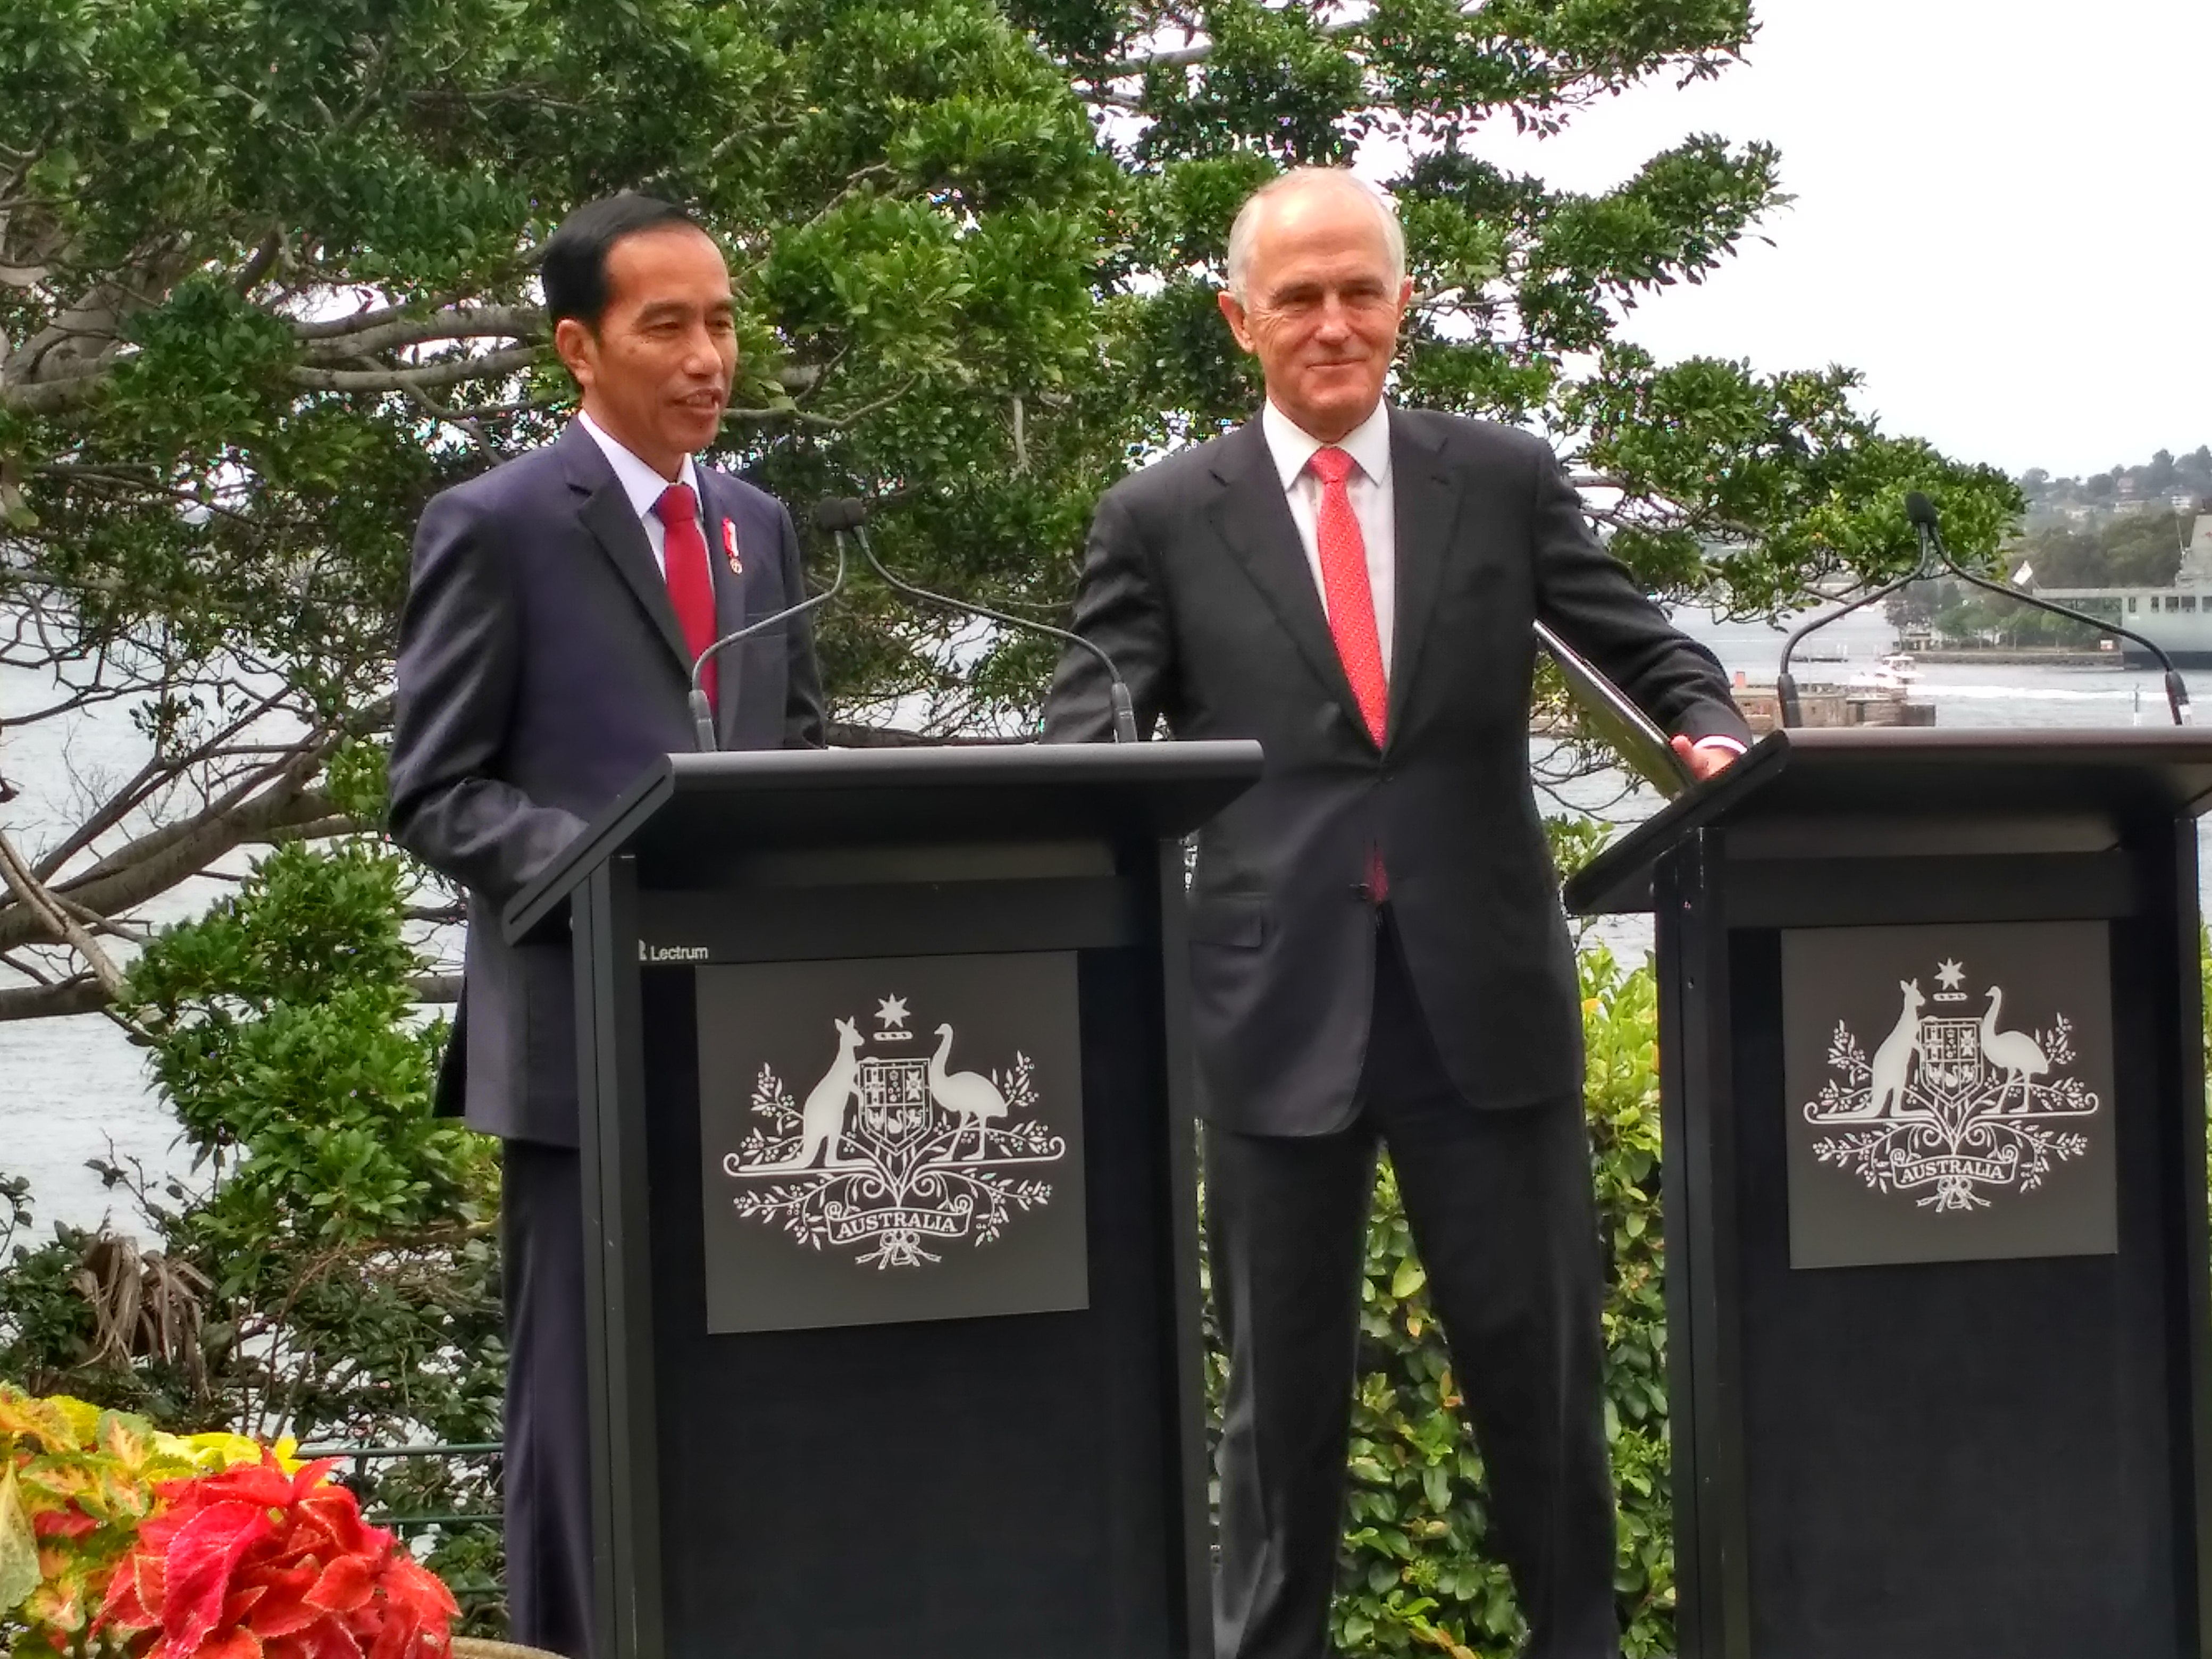 Presiden Jokowi dan PM Turnbull mengadakan konferensi pers bersama di Sydney, Australia, Minggu (26/2). (Foto: Humas/Dinda)